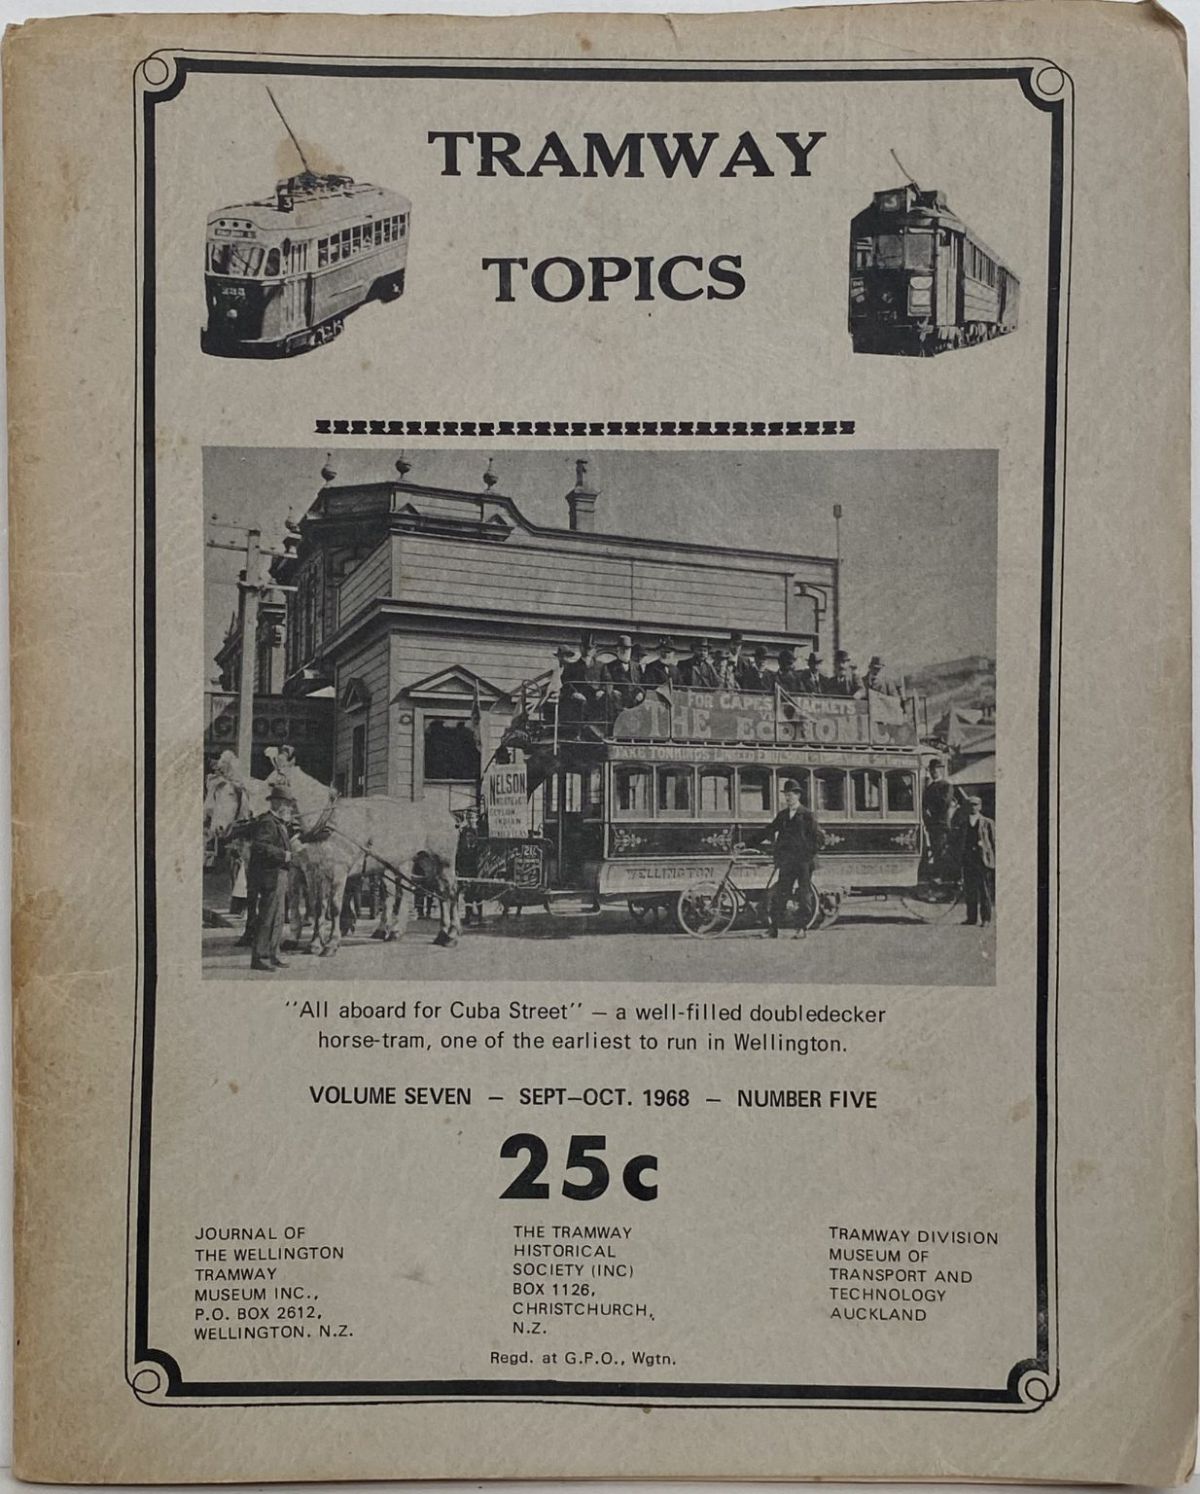 TRAMWAY TOPICS Vol 7, No 5, September-October 1968